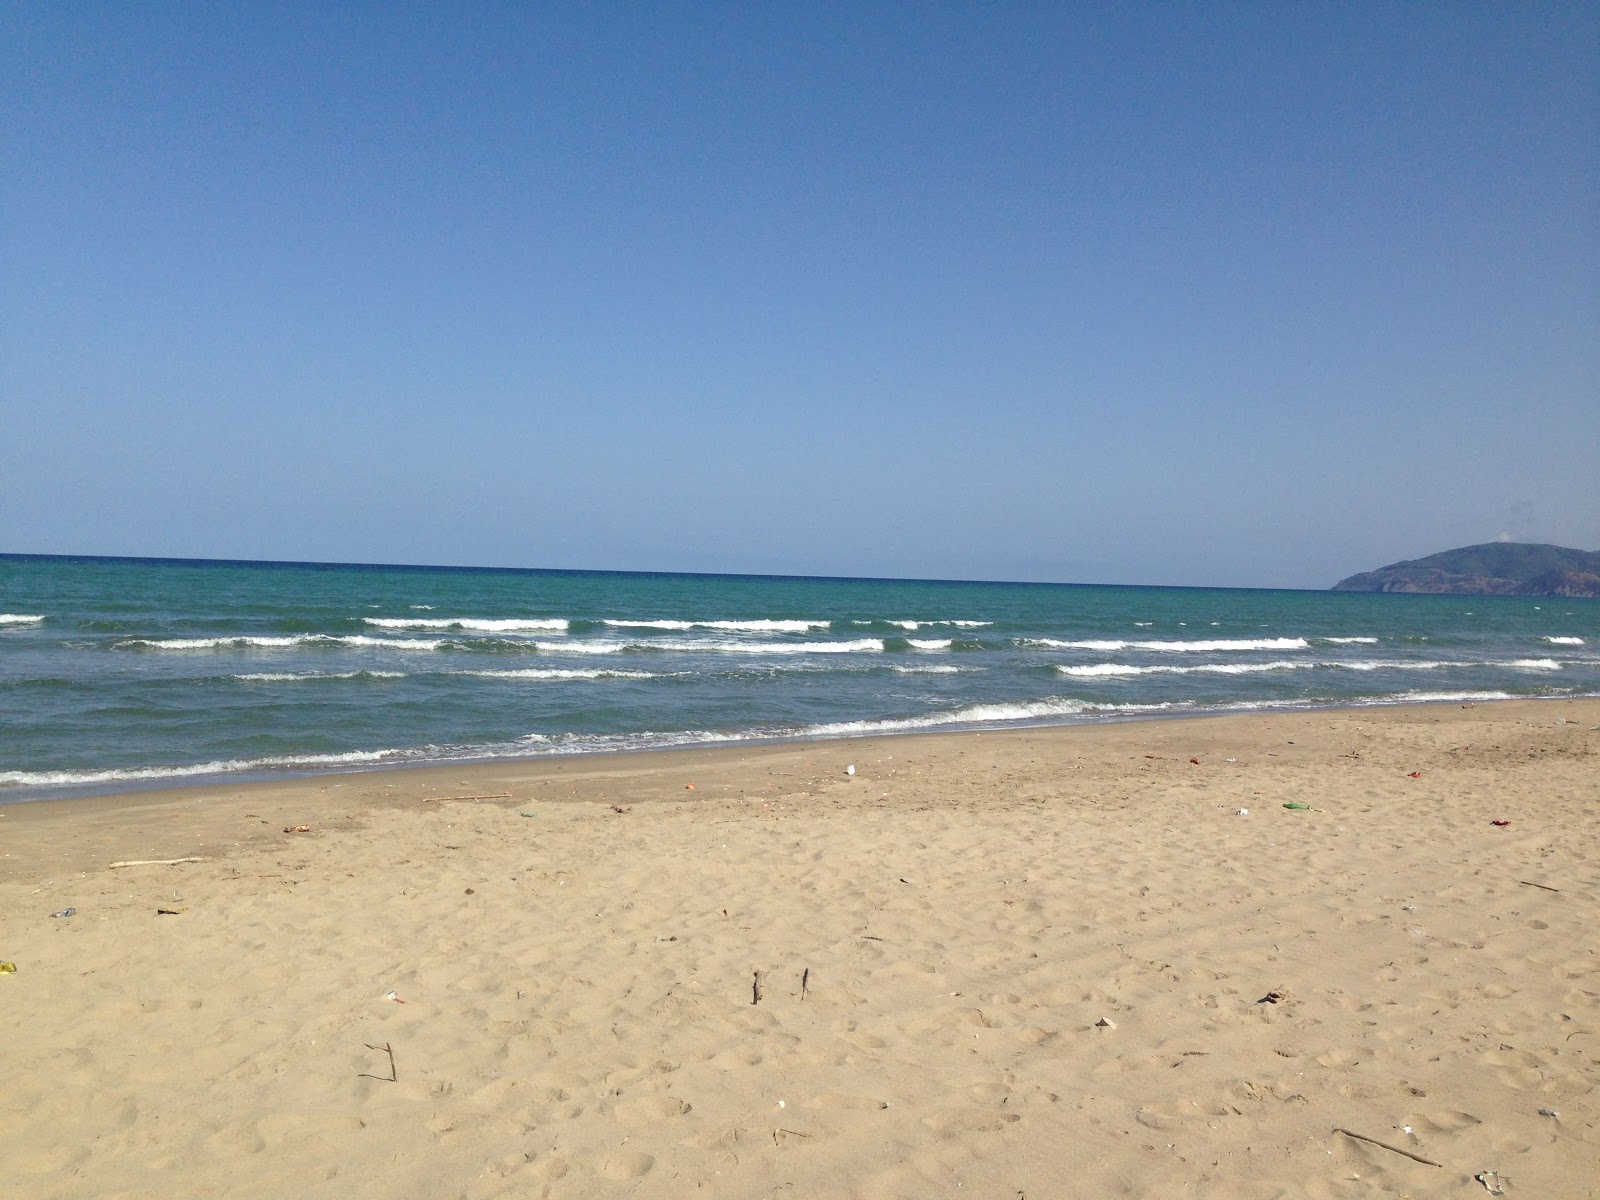 Fotografie cu Sidi Abdeslam beach cu o suprafață de nisip strălucitor